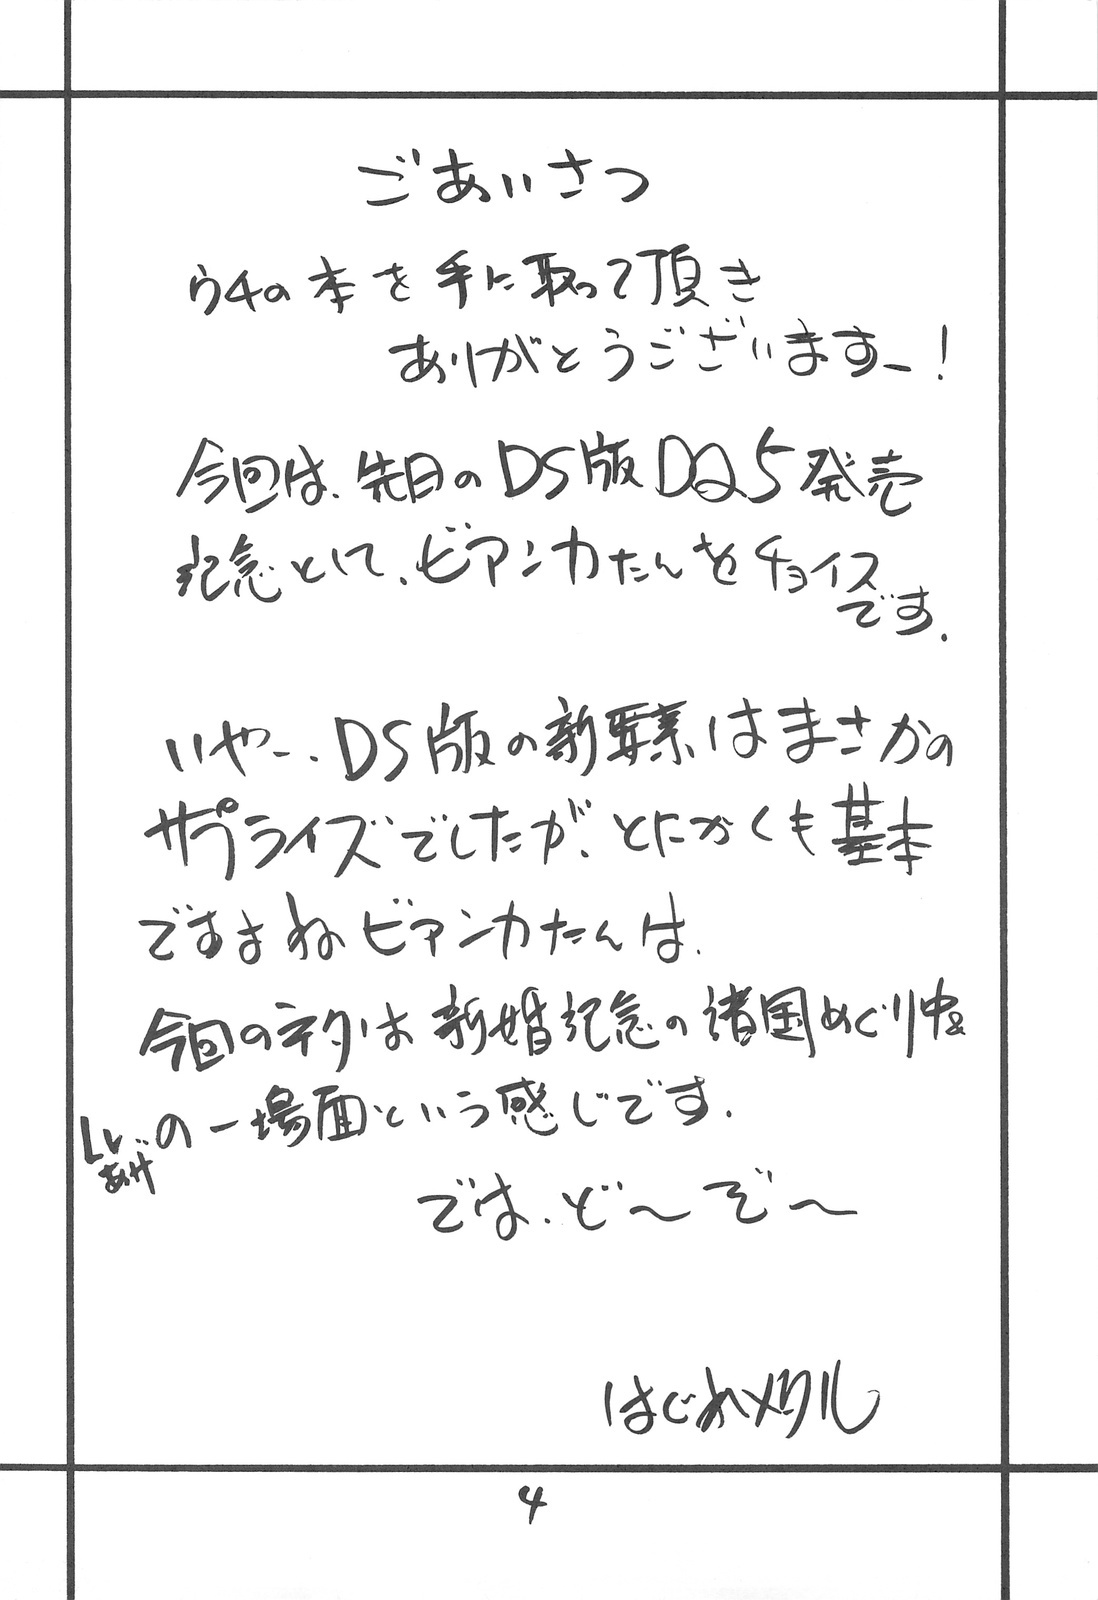 (SC41) [ZINZIN (Hagure Metal)] DRAGON REQUEST Vol. 11 (Dragon Quest V) page 3 full